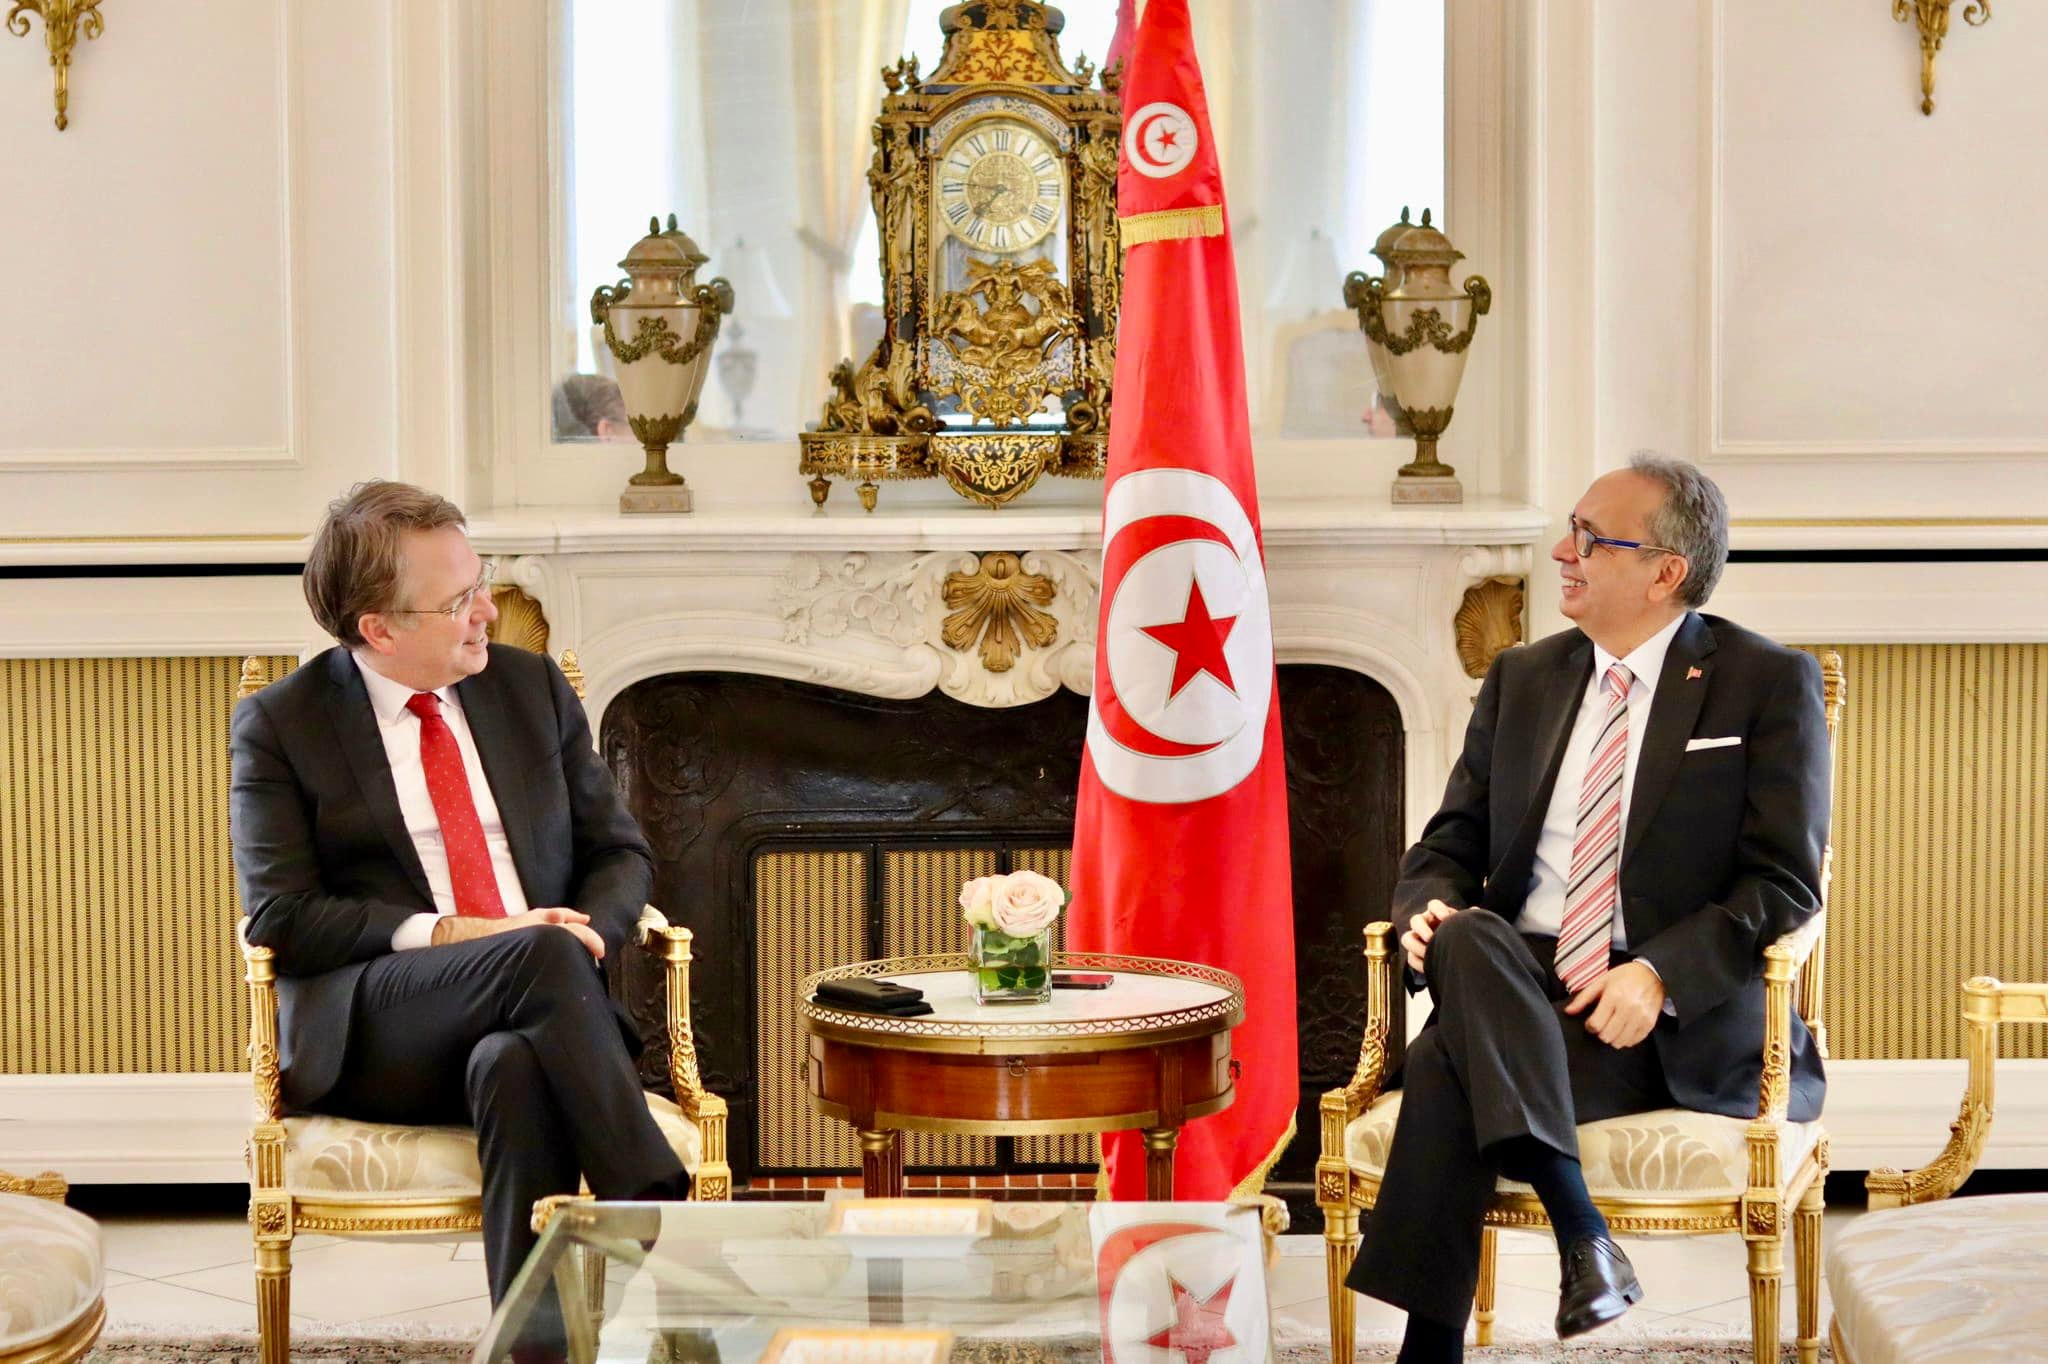 L’ambassadeur de Tunisie en France s’entretient avec le conseiller diplomatique d’Emmanuel Macron